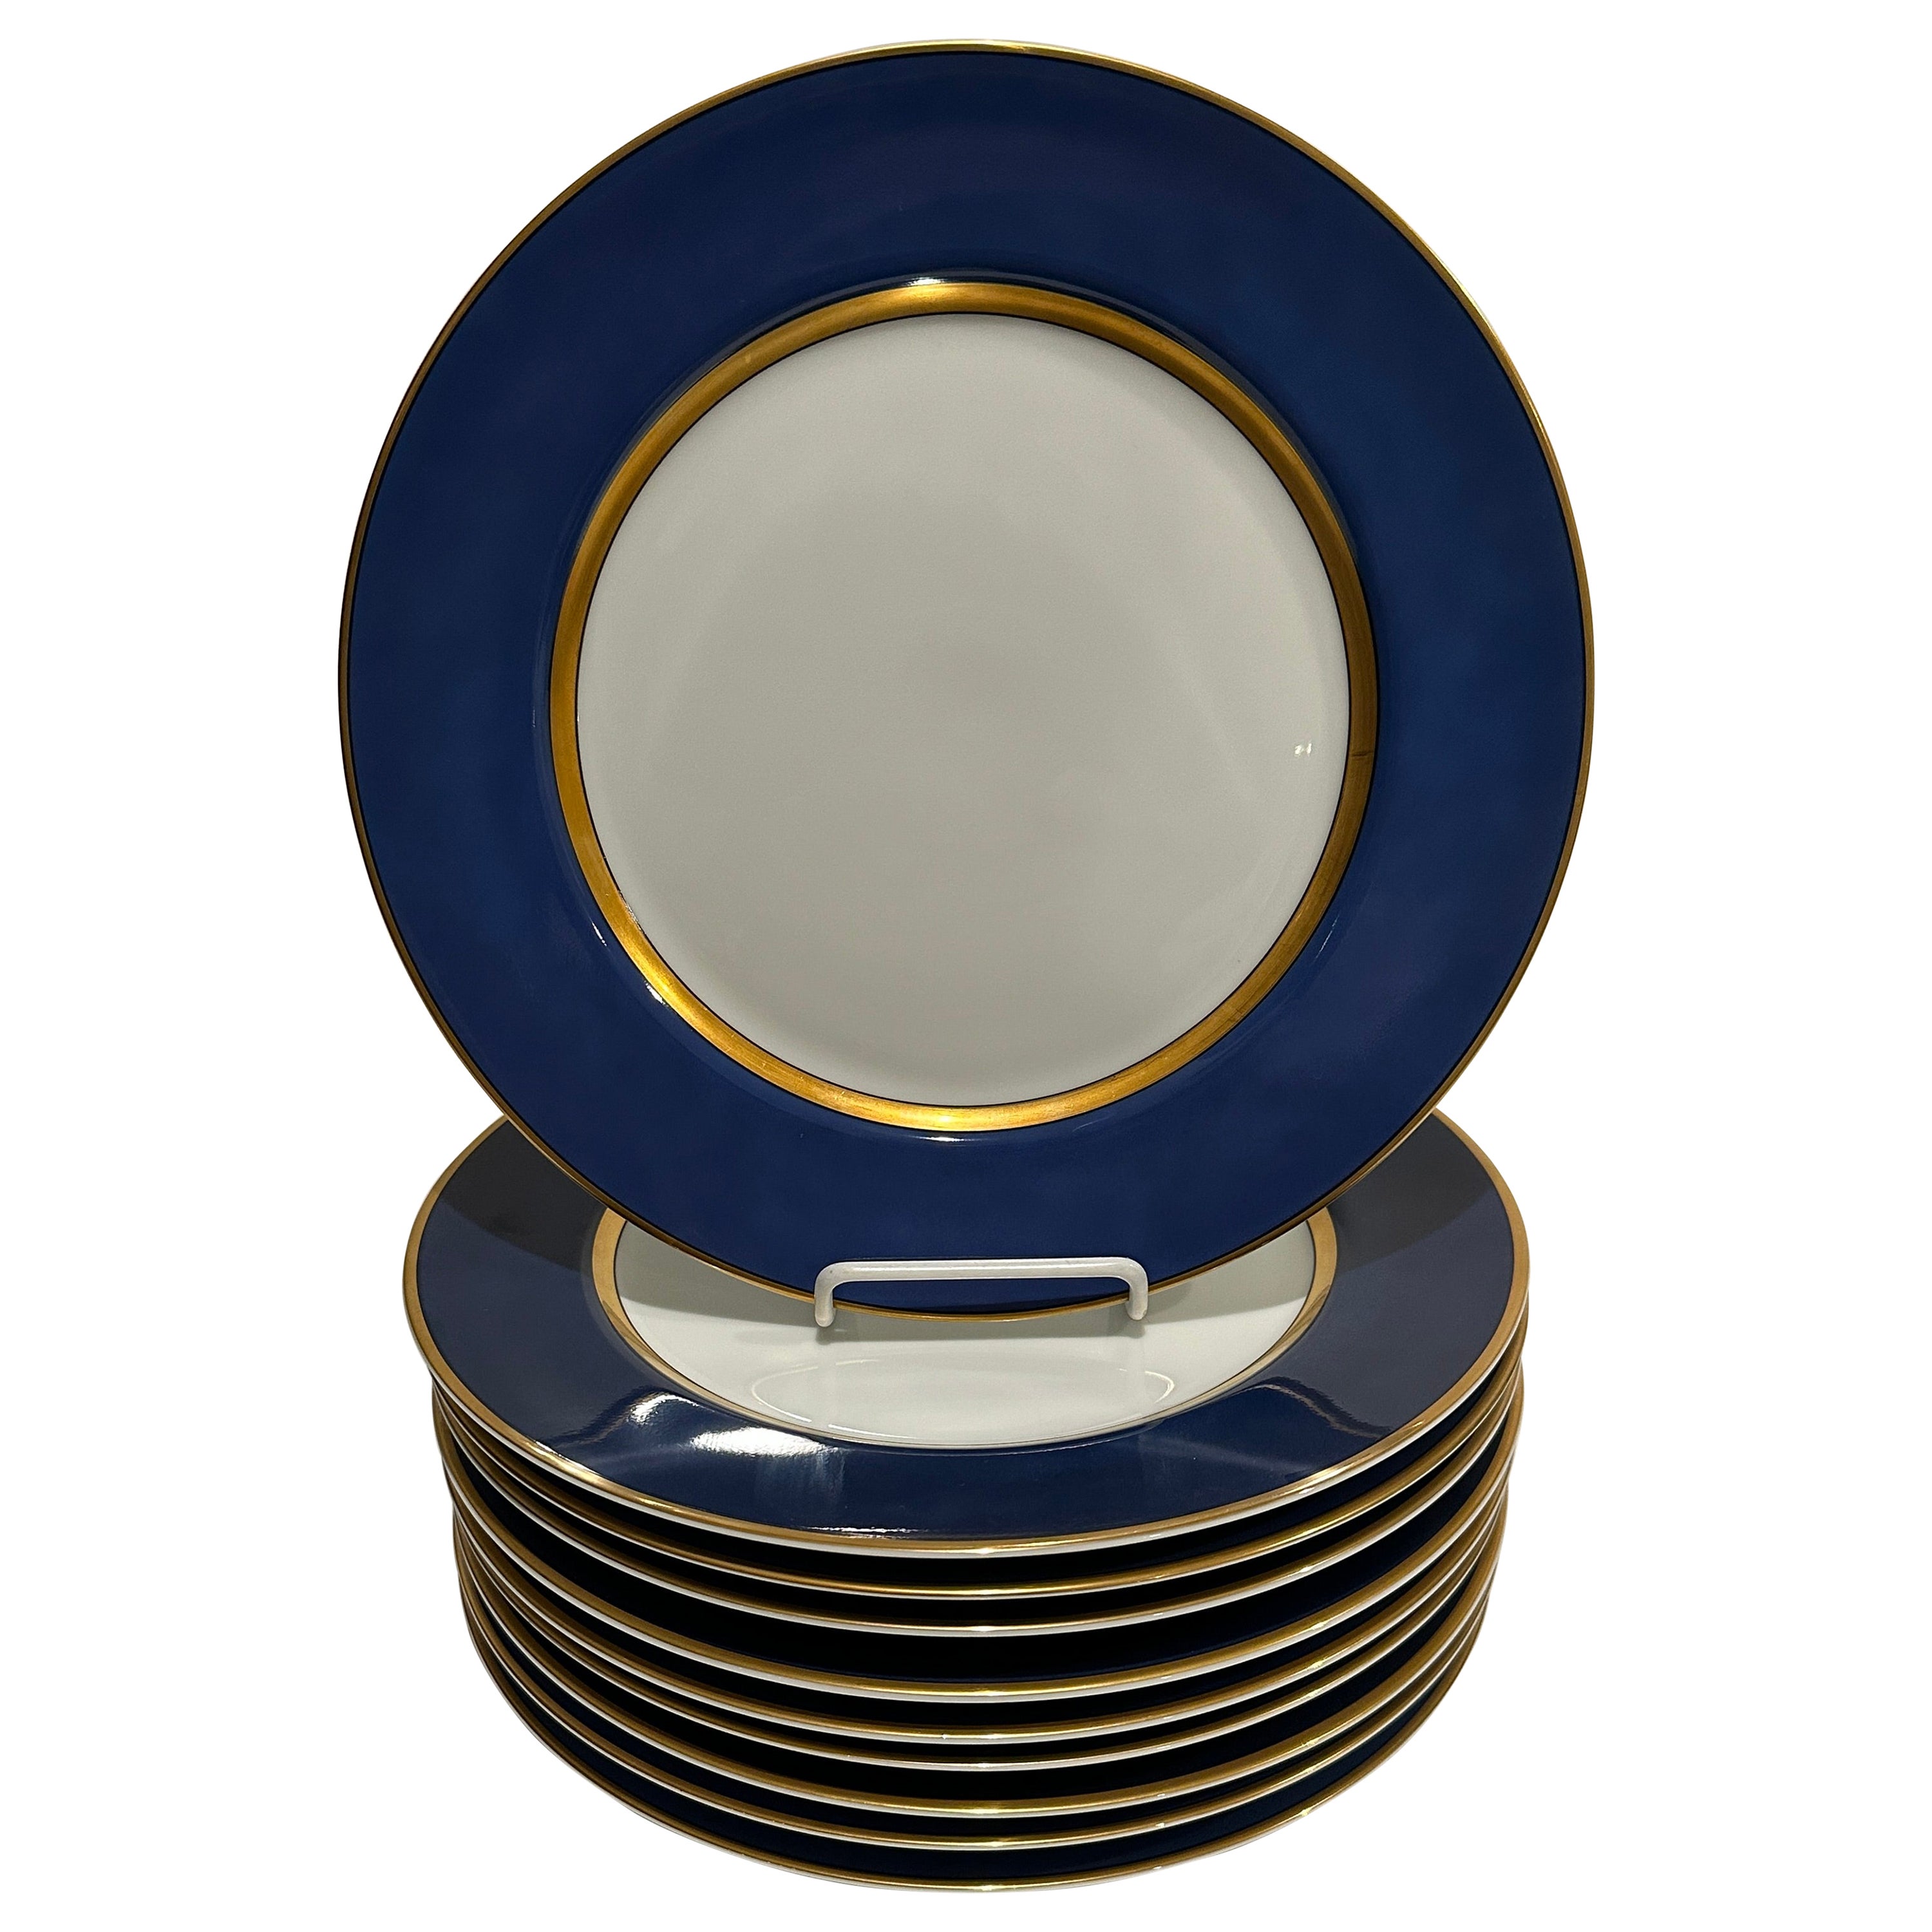 Fitz and Floyd Renaissance Cerulean Blue Porcelain Service Plates